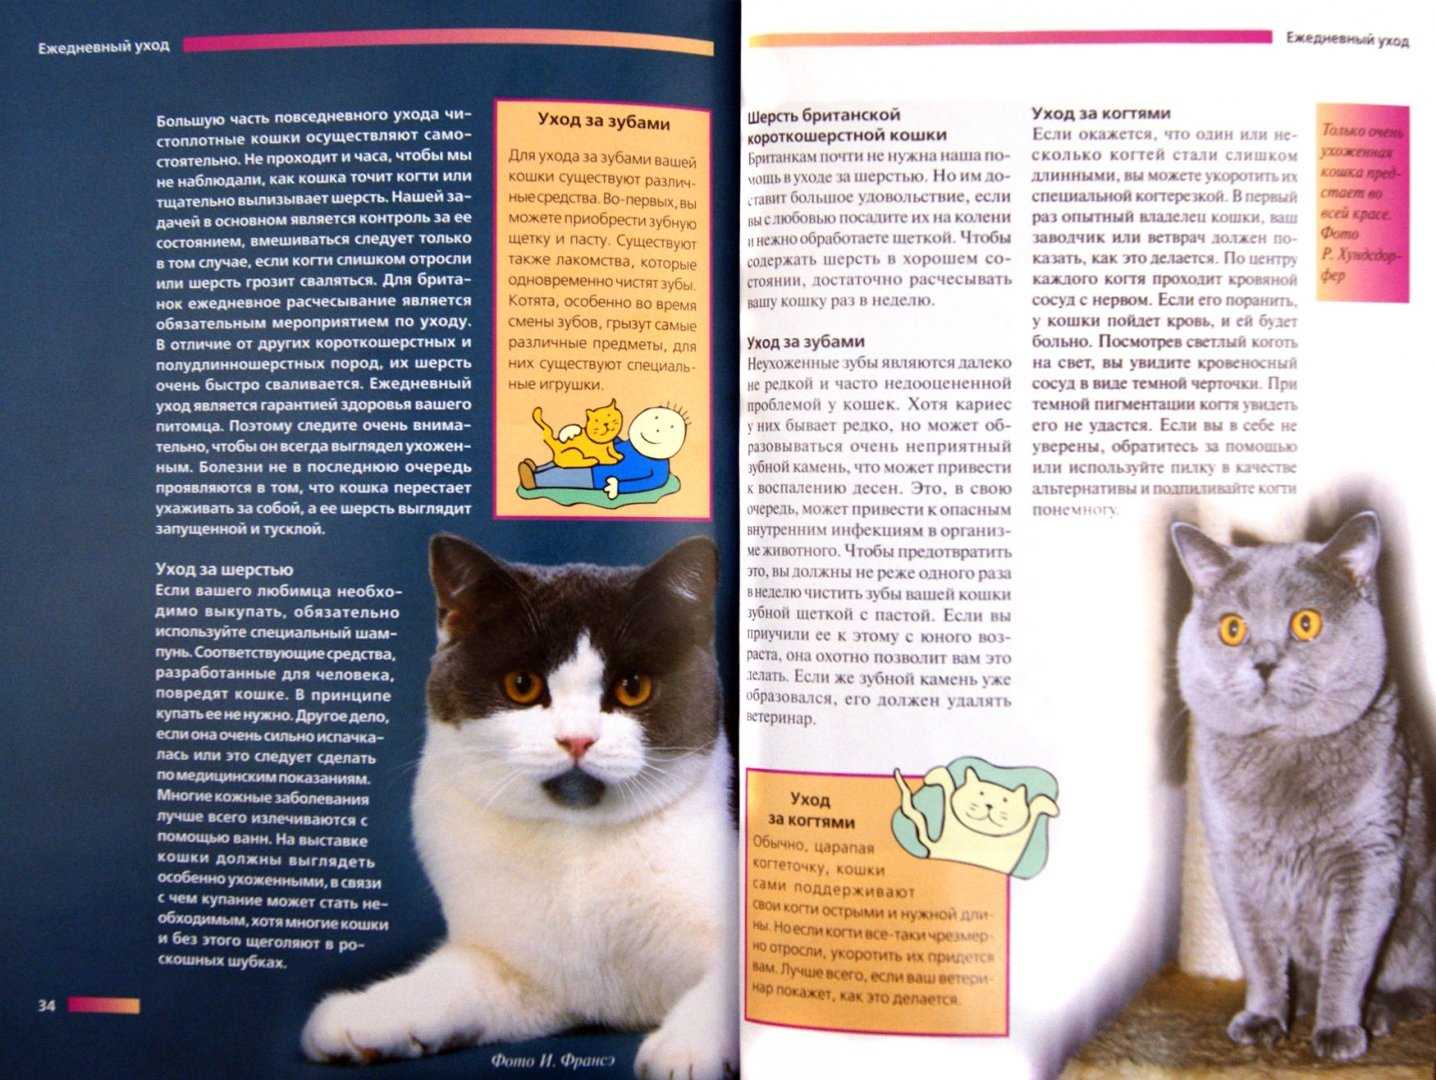 Кинкалоу — порода кошек